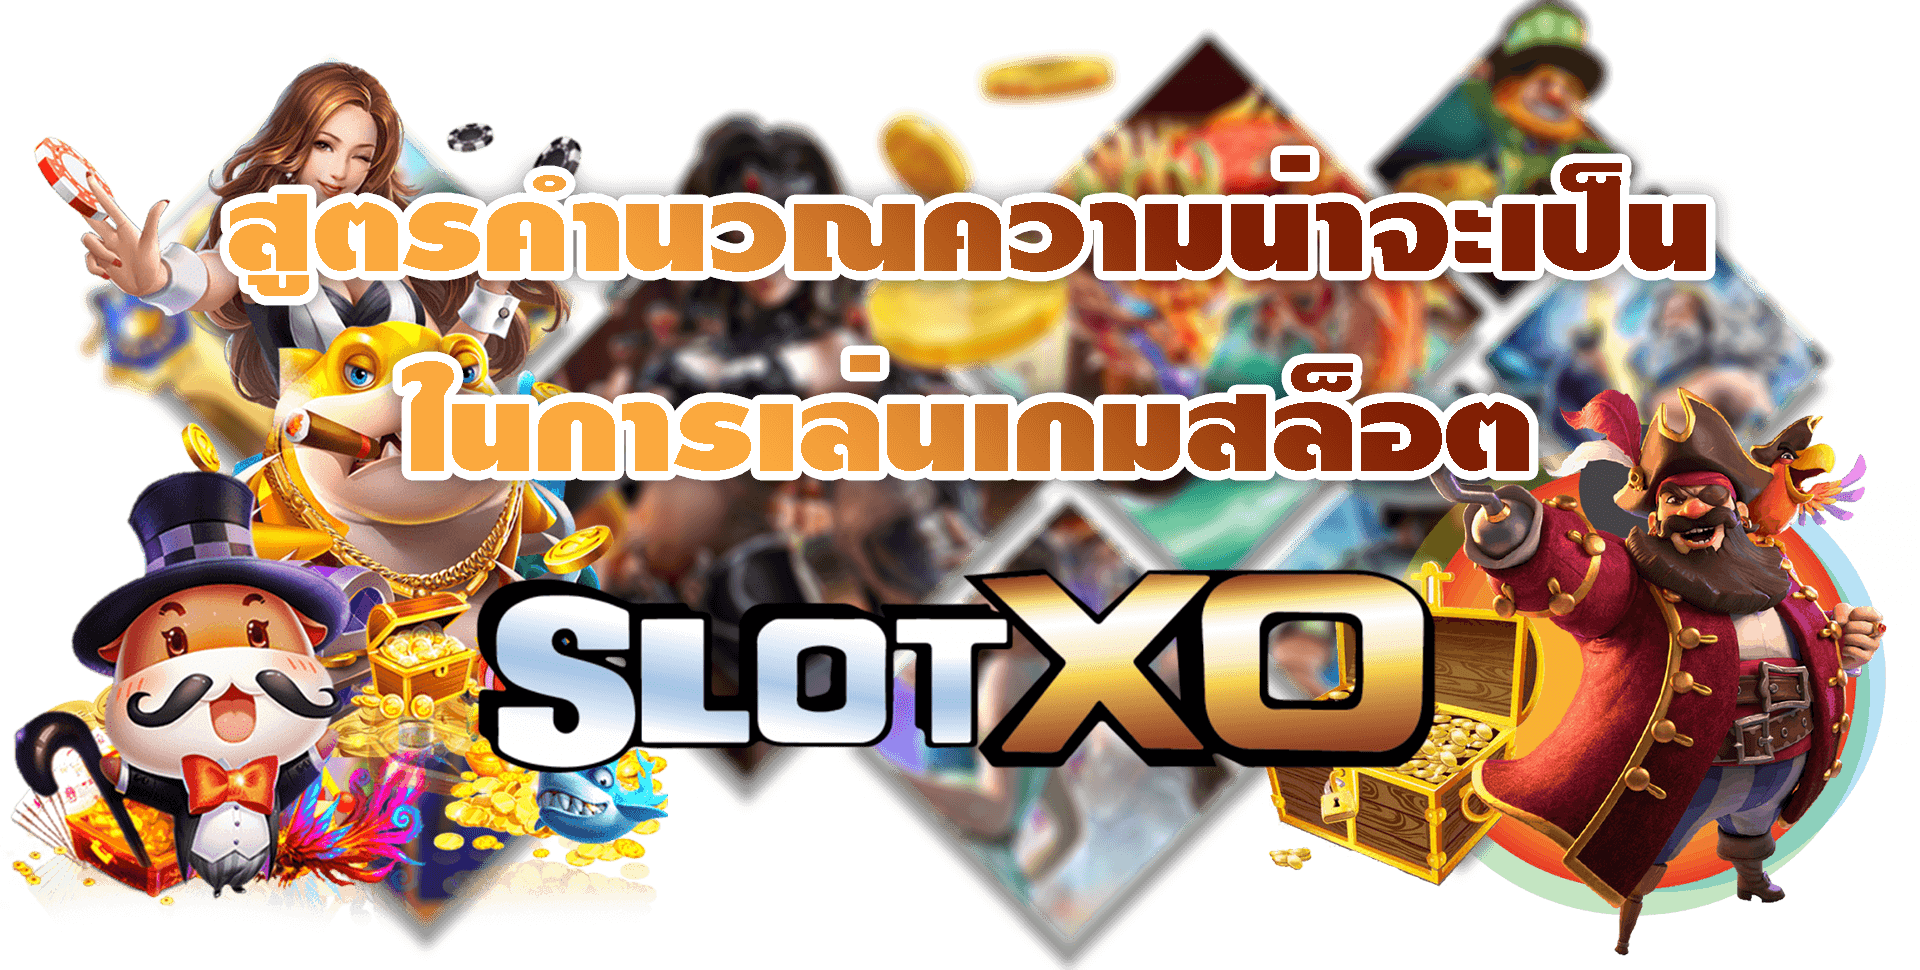 SLOT XO สูตรคำนวณการเล่นสล็อต Free ฝาก40รับ100ถอนไม่อั้น